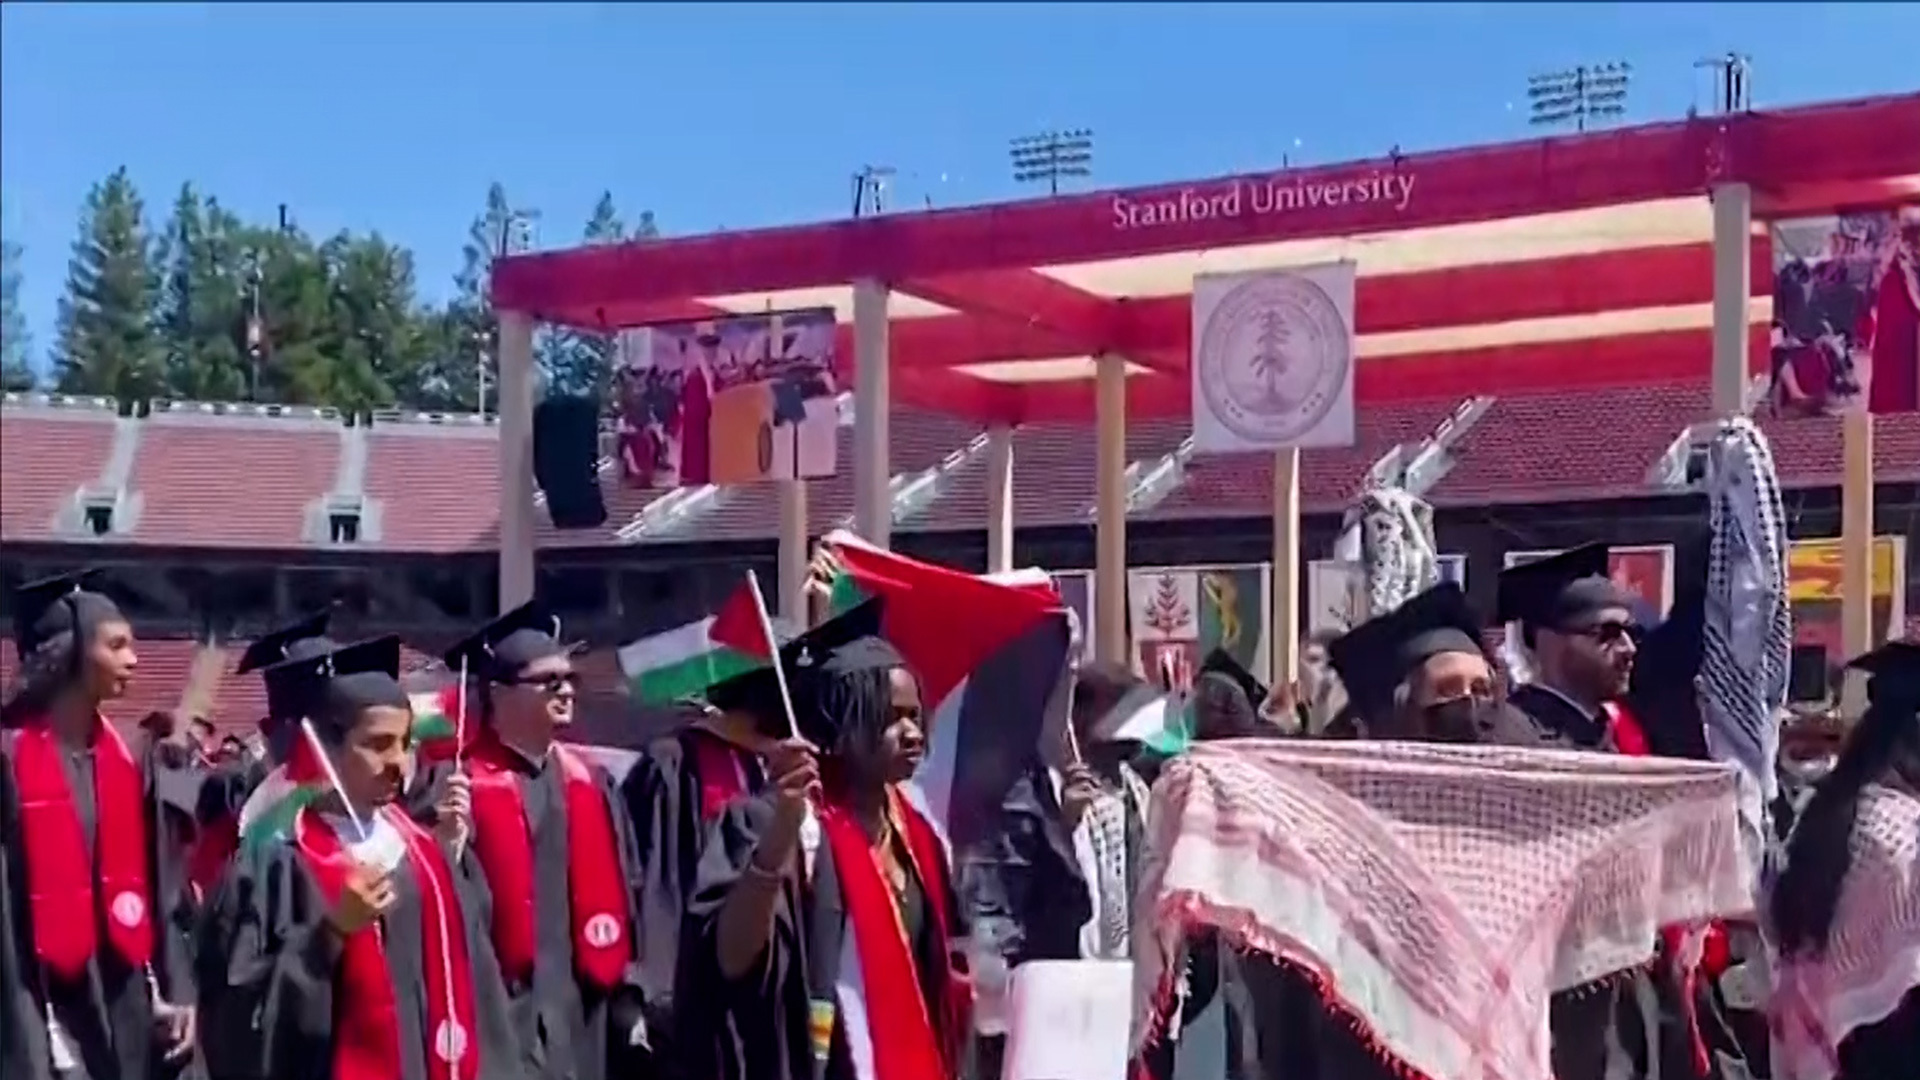 Des centaines d'étudiants quittent la remise de diplômes à Stanford